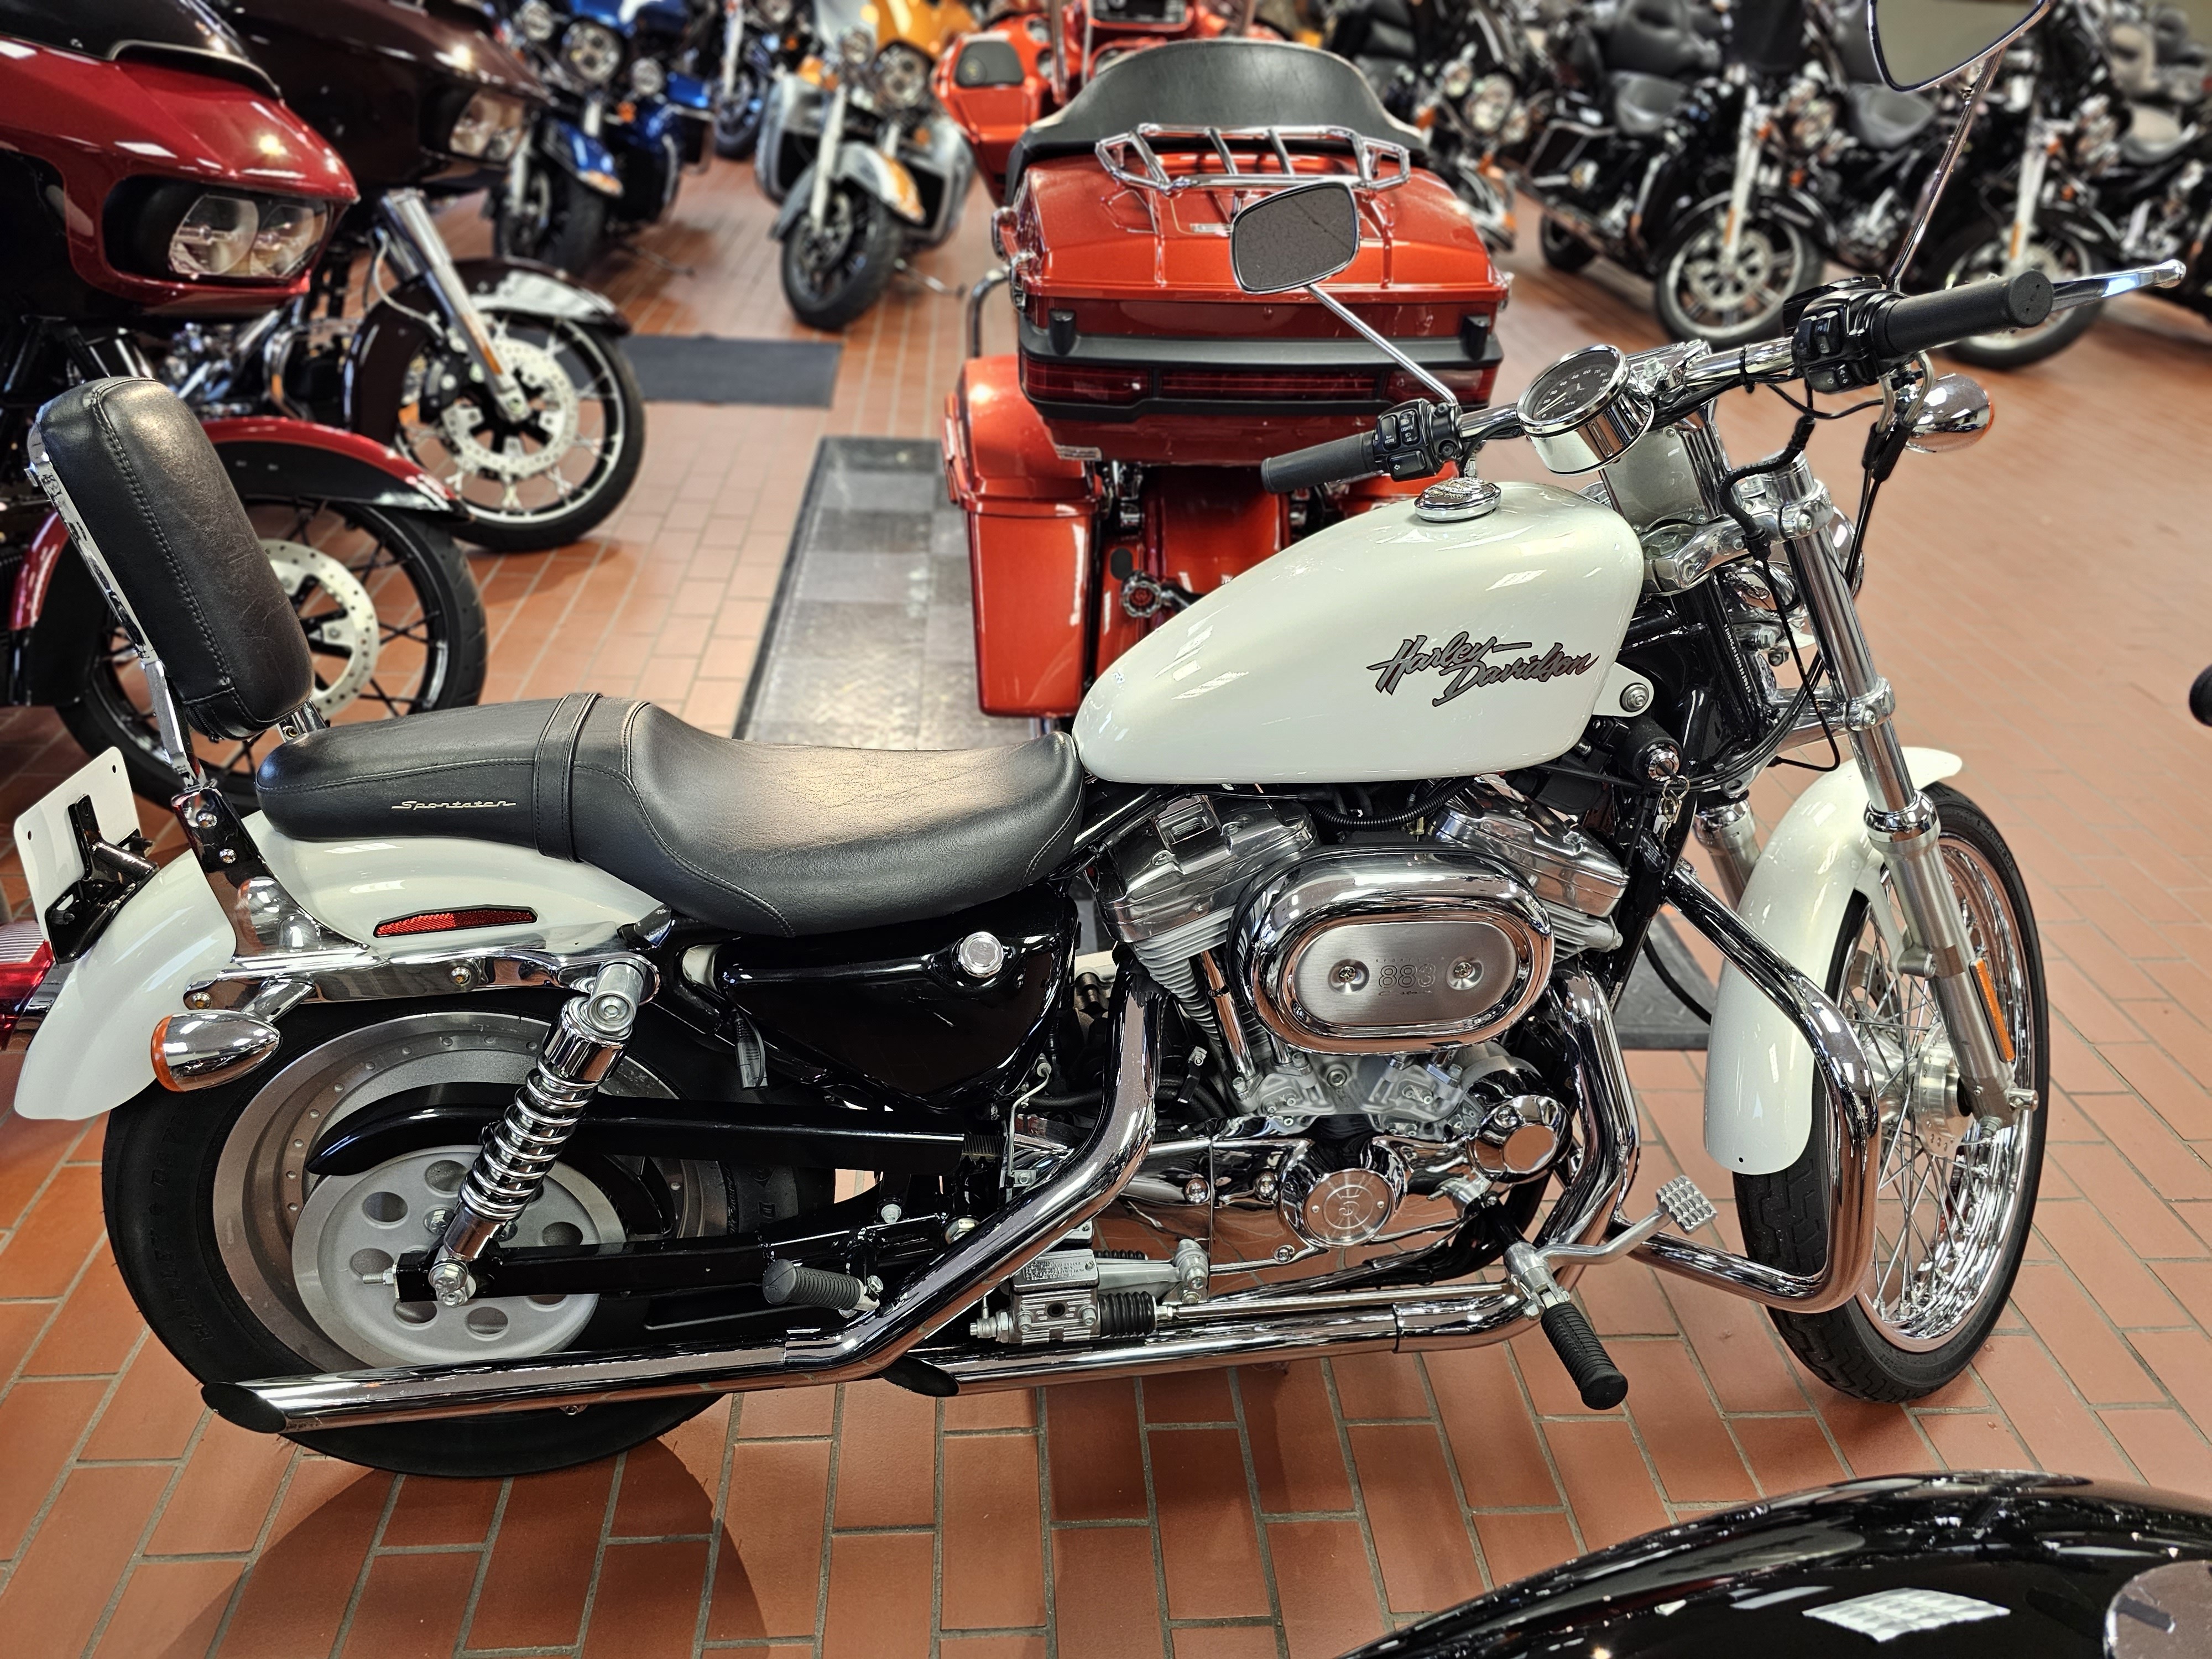 2002 Harley-Davidson XL883C at Rooster's Harley Davidson